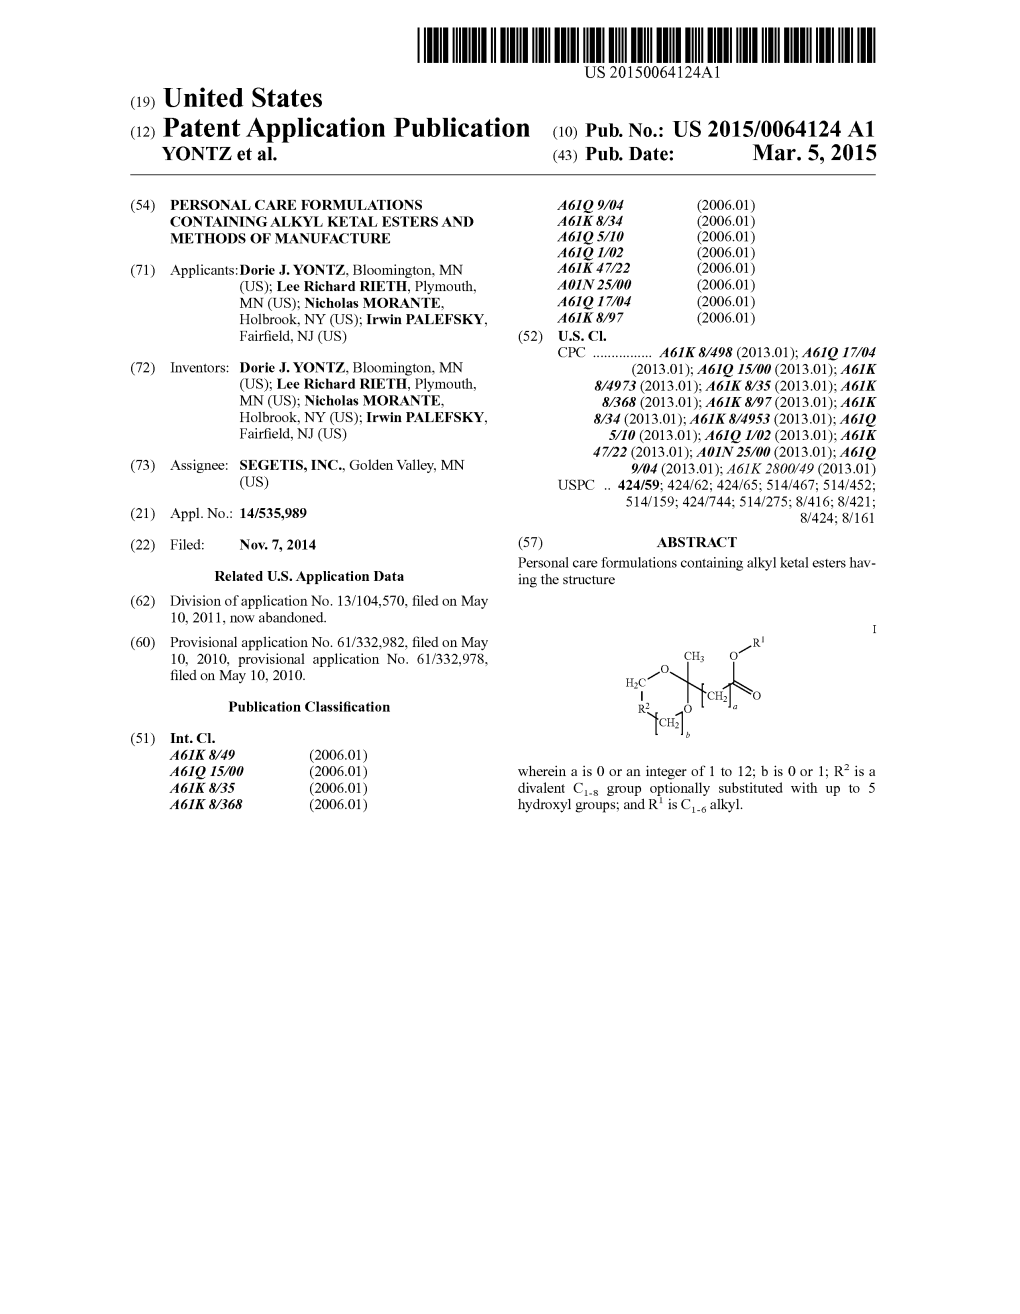 (12) Patent Application Publication (10) Pub. No.: US 2015/0064124 A1 YONTZ Et Al